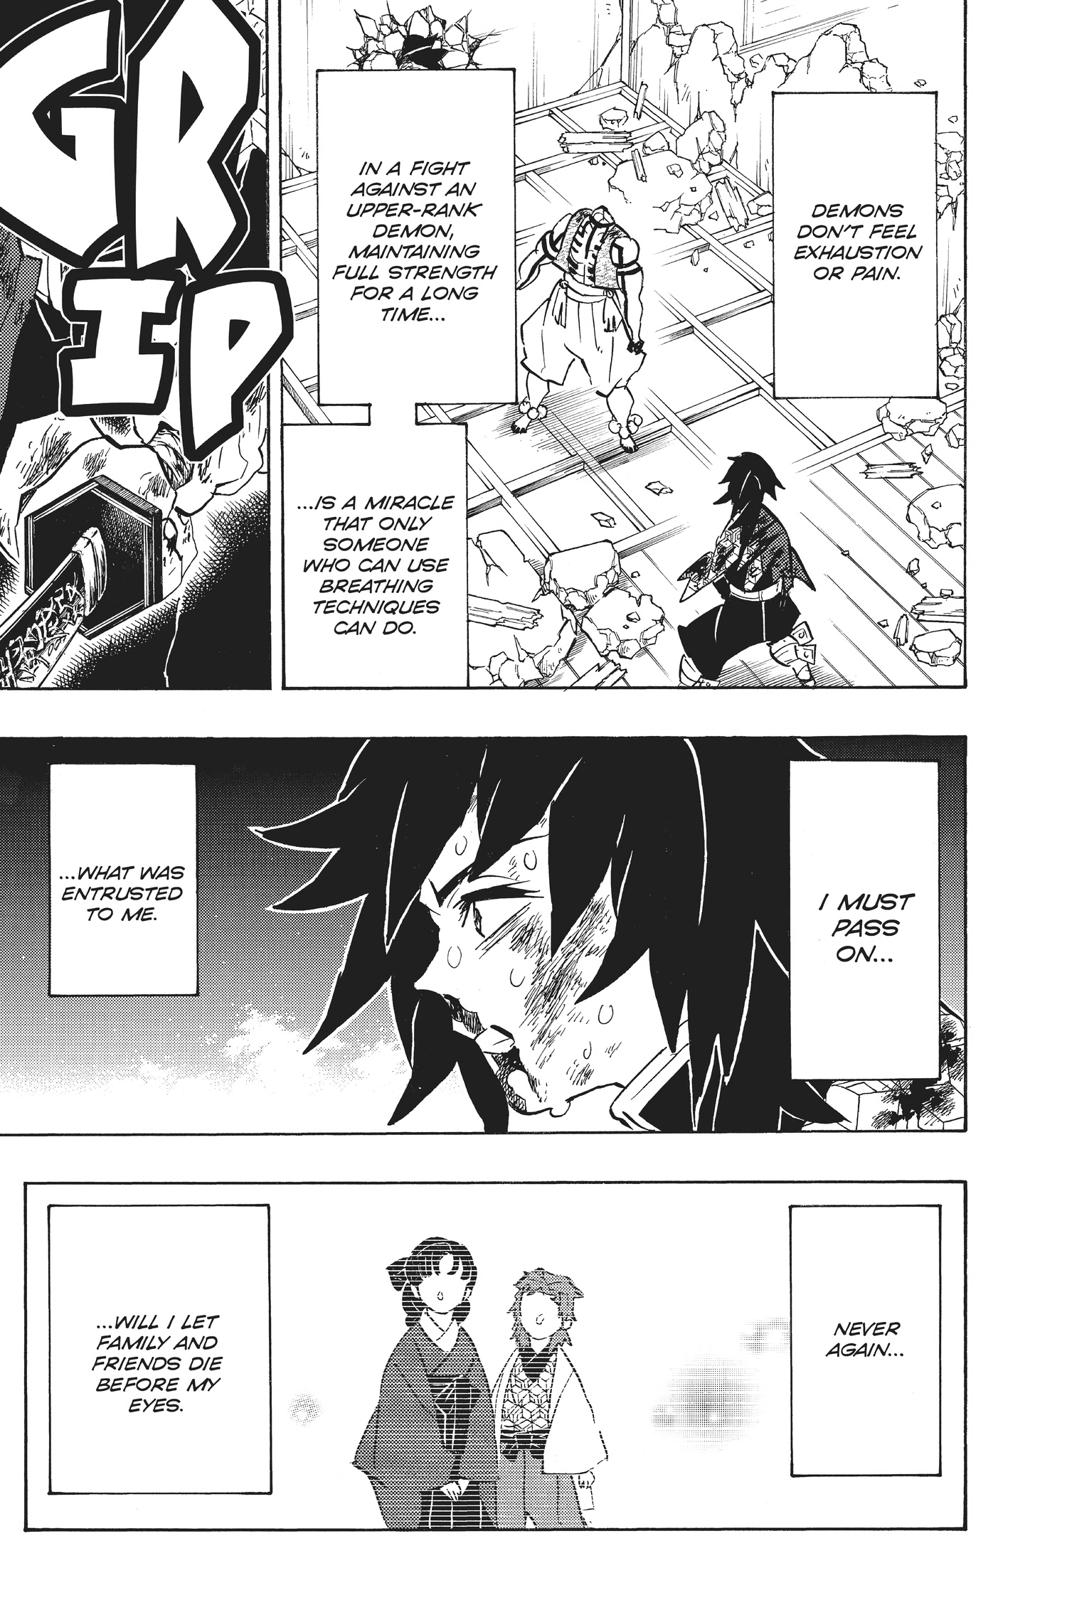 Demon Slayer Manga Manga Chapter - 154 - image 3